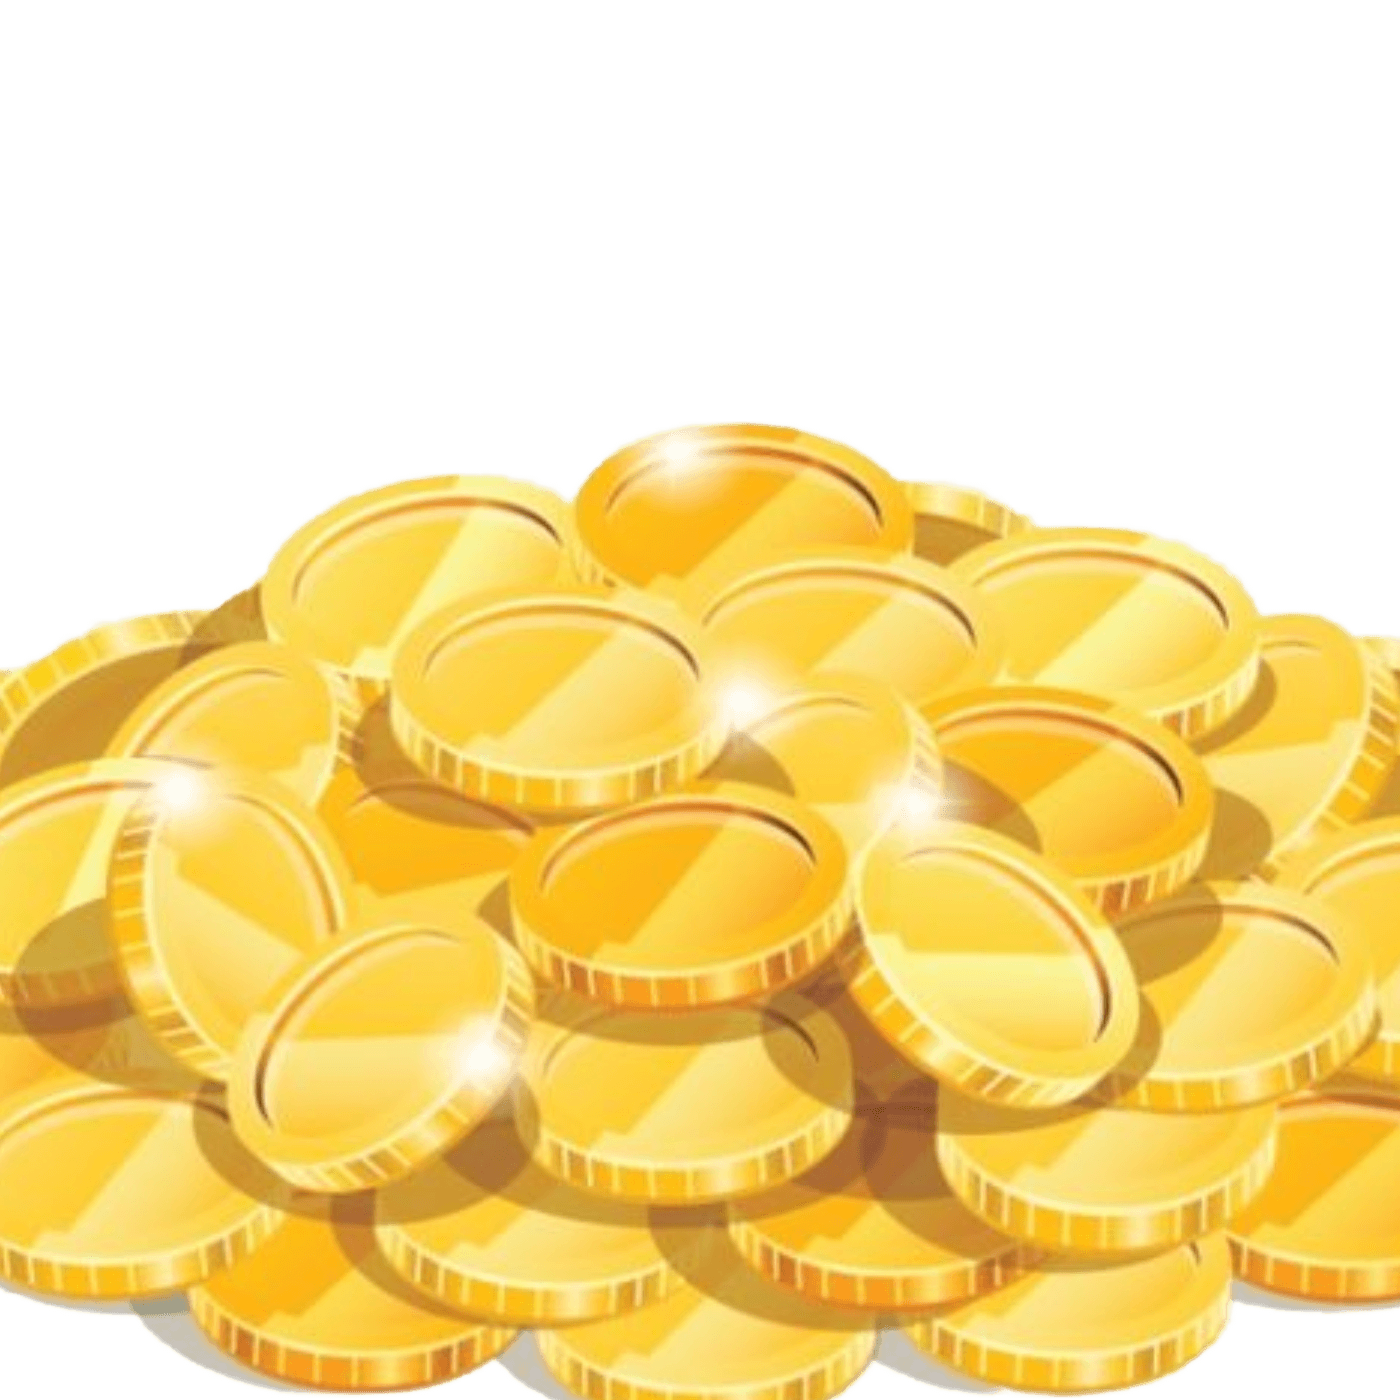 baldurs gate 3 gold coins boost